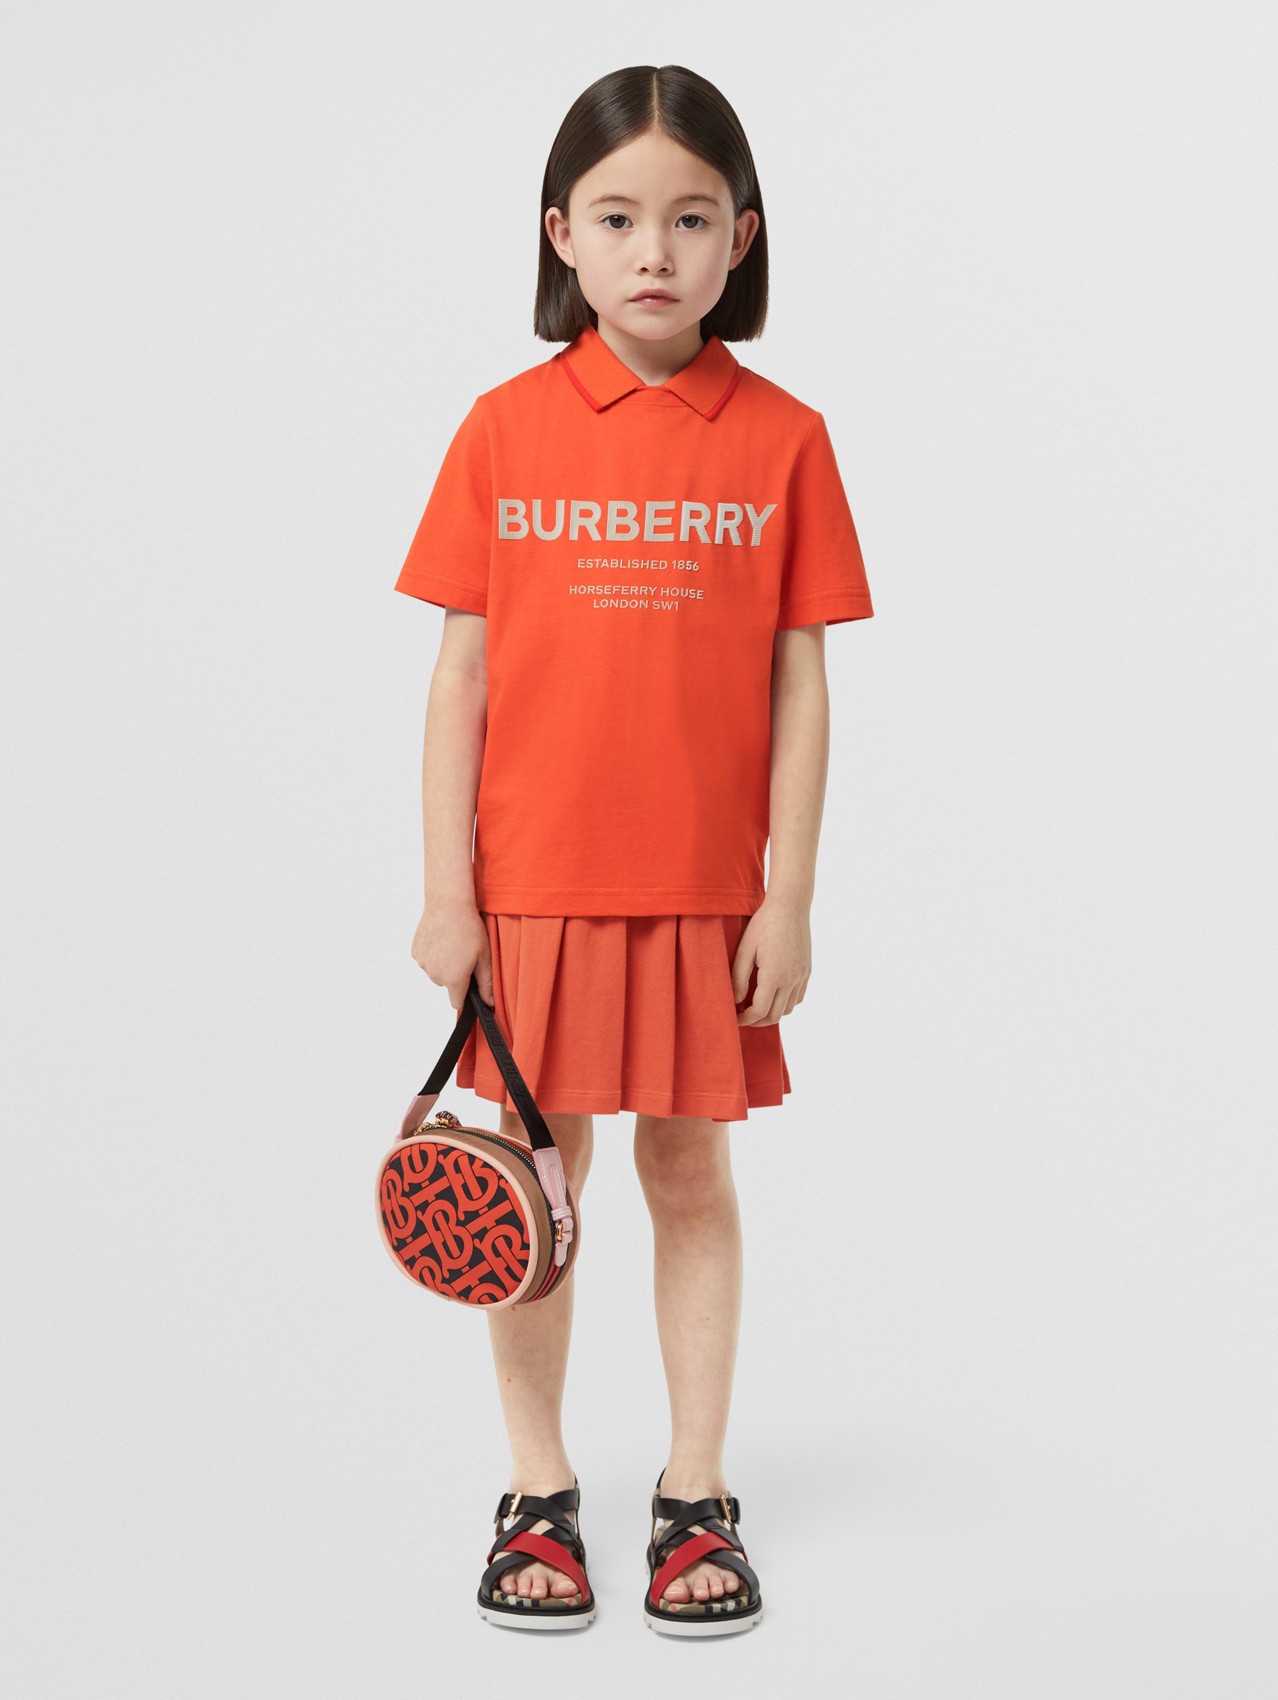 ガールズデザイナー服| バーバリー | Burberry® 公式サイト